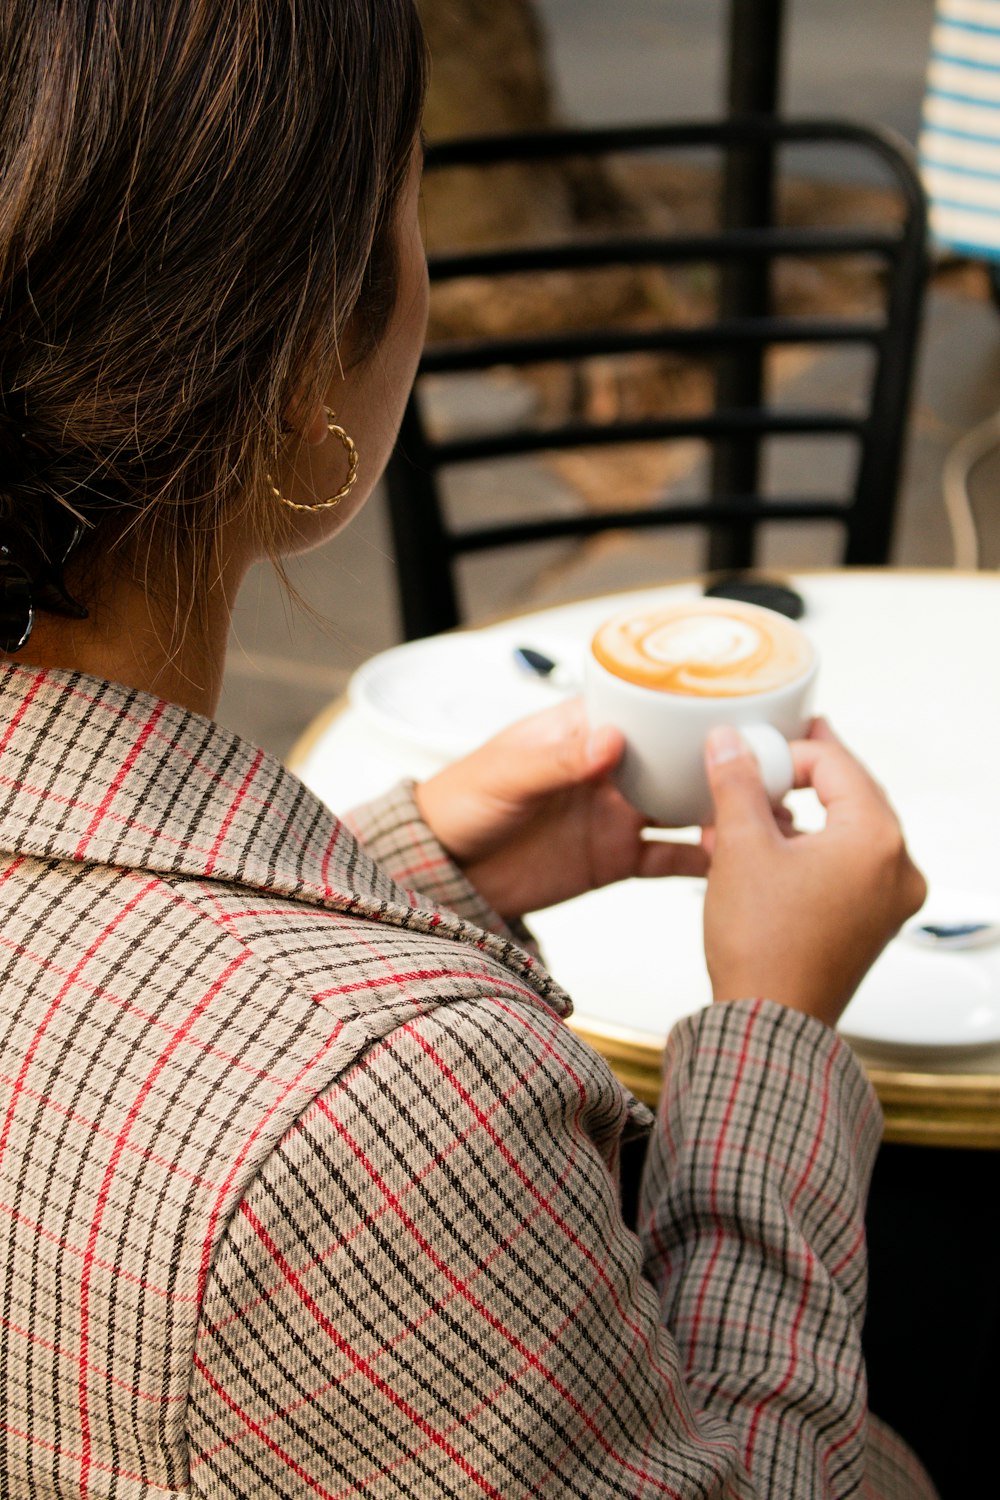 흰색 빨간색과 검은색 격자무늬 긴 소매 셔츠를 입은 여자 흰색 세라믹 머그잔을 들고 있다